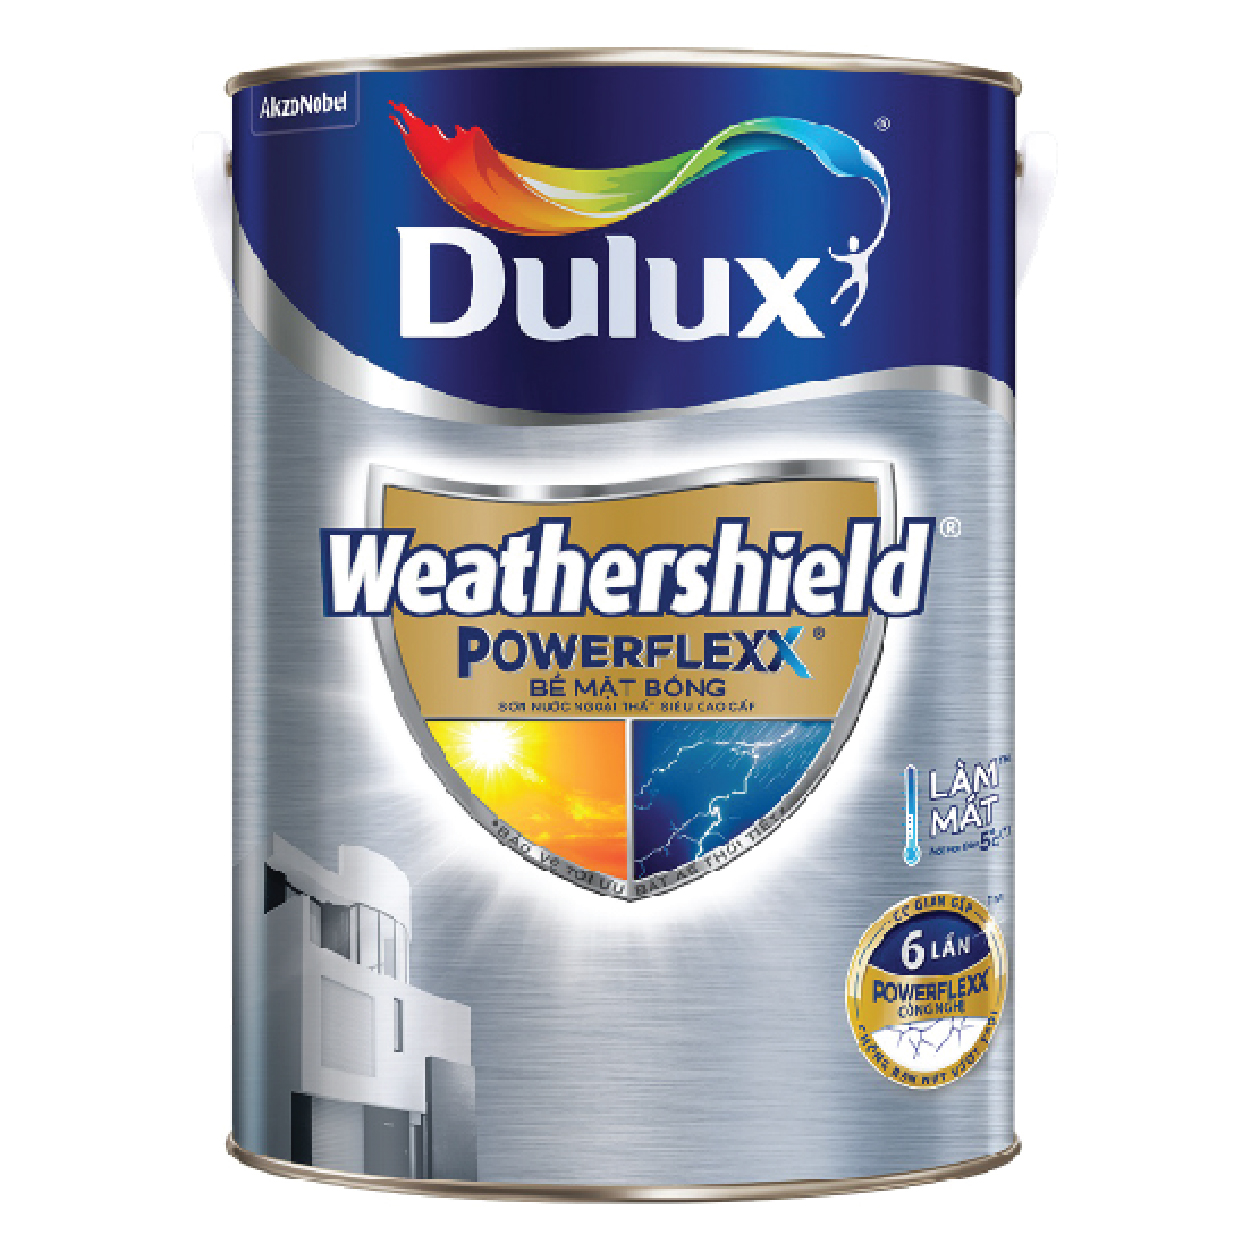 Sơn Dulux Weathershield Powerflexx